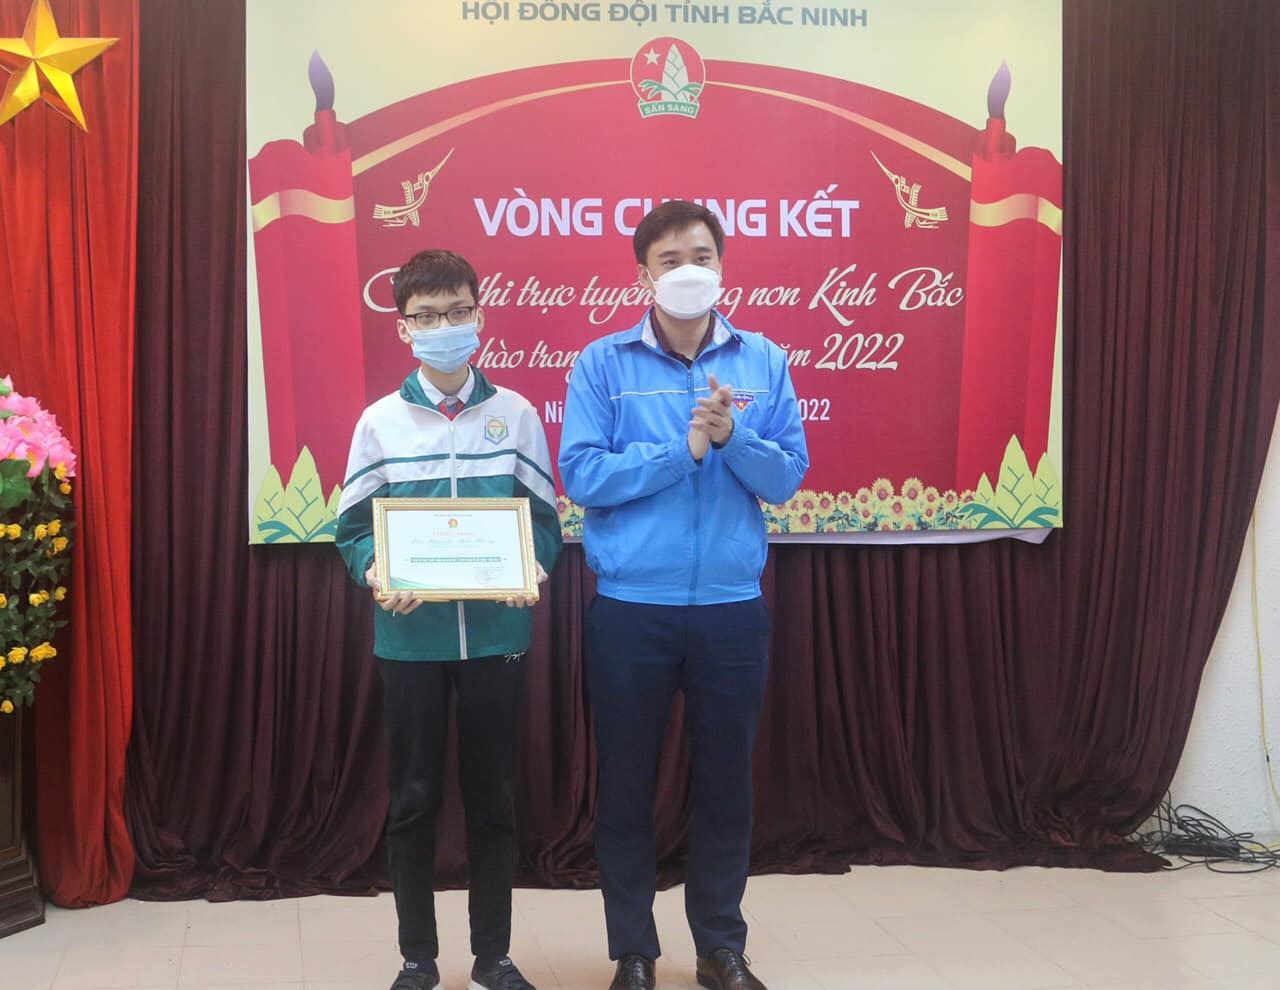 Hội đồng Đội tỉnh Bắc Ninh tổ chức cuộc thi trực tuyến  “Măng non Kinh Bắc – Tự hào trang sử quê hương” năm 2022